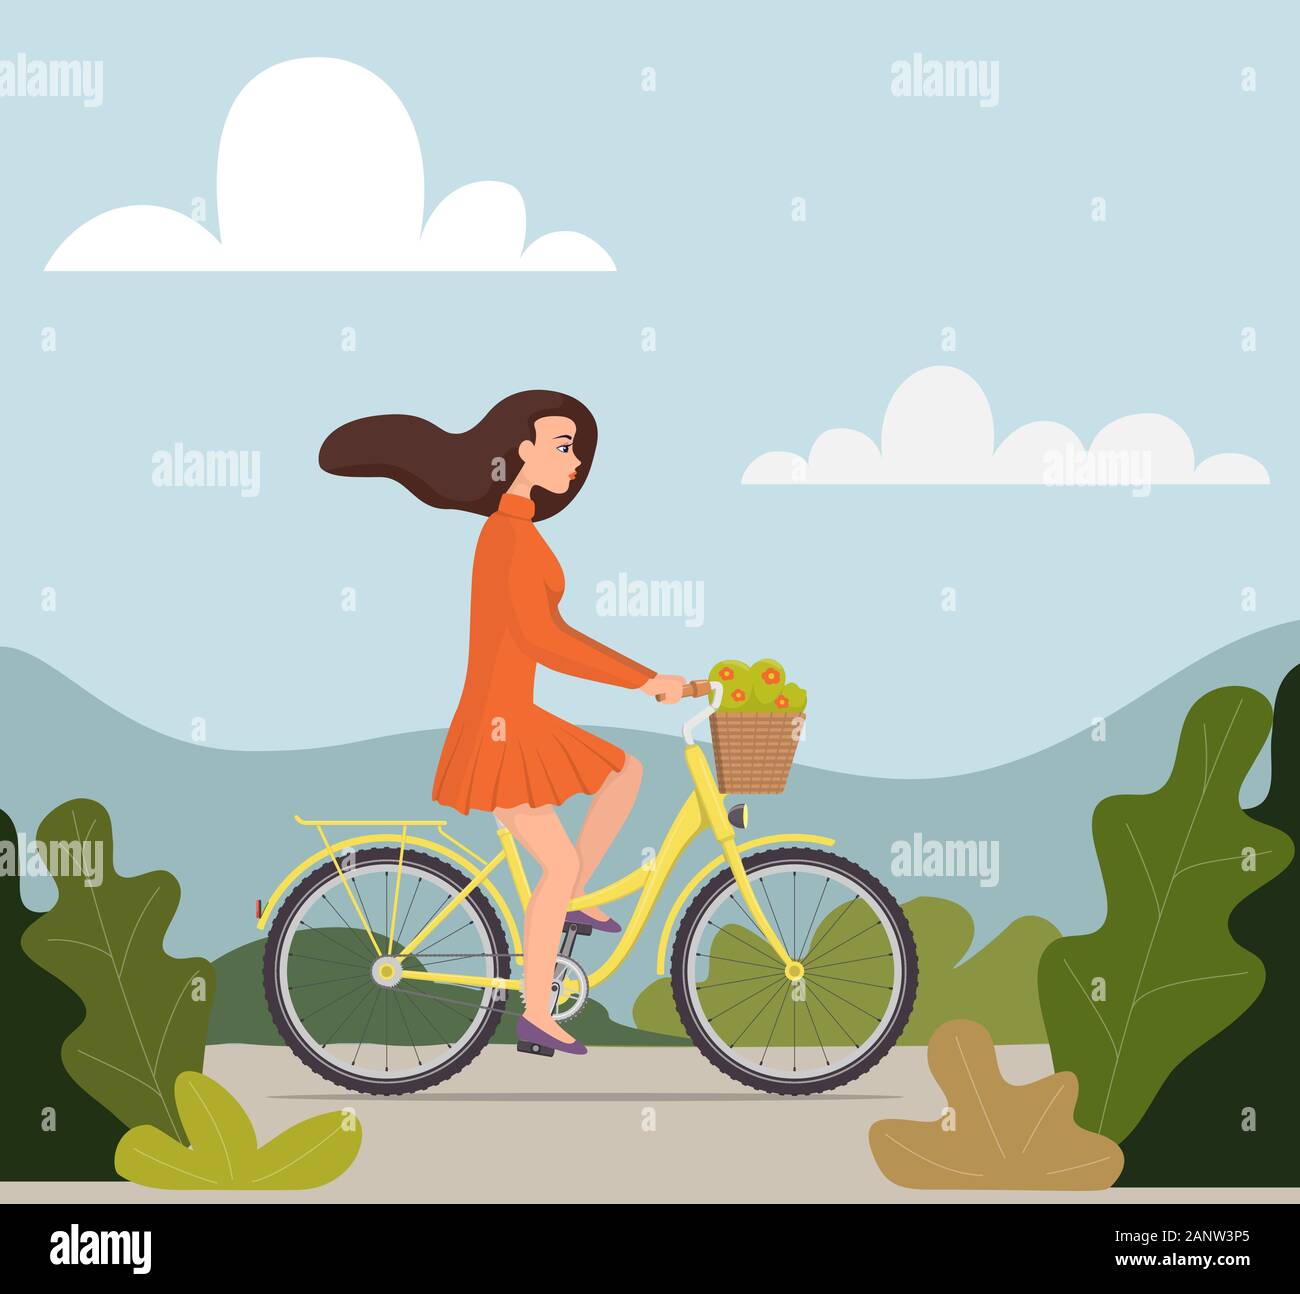 Belle jeune femme à cheval sur un vélo avec des fleurs dans un panier. Jolie fille en jolie robe avec des cheveux voletant dans le vent s'engouffre en vélo. Vector Illustration de Vecteur